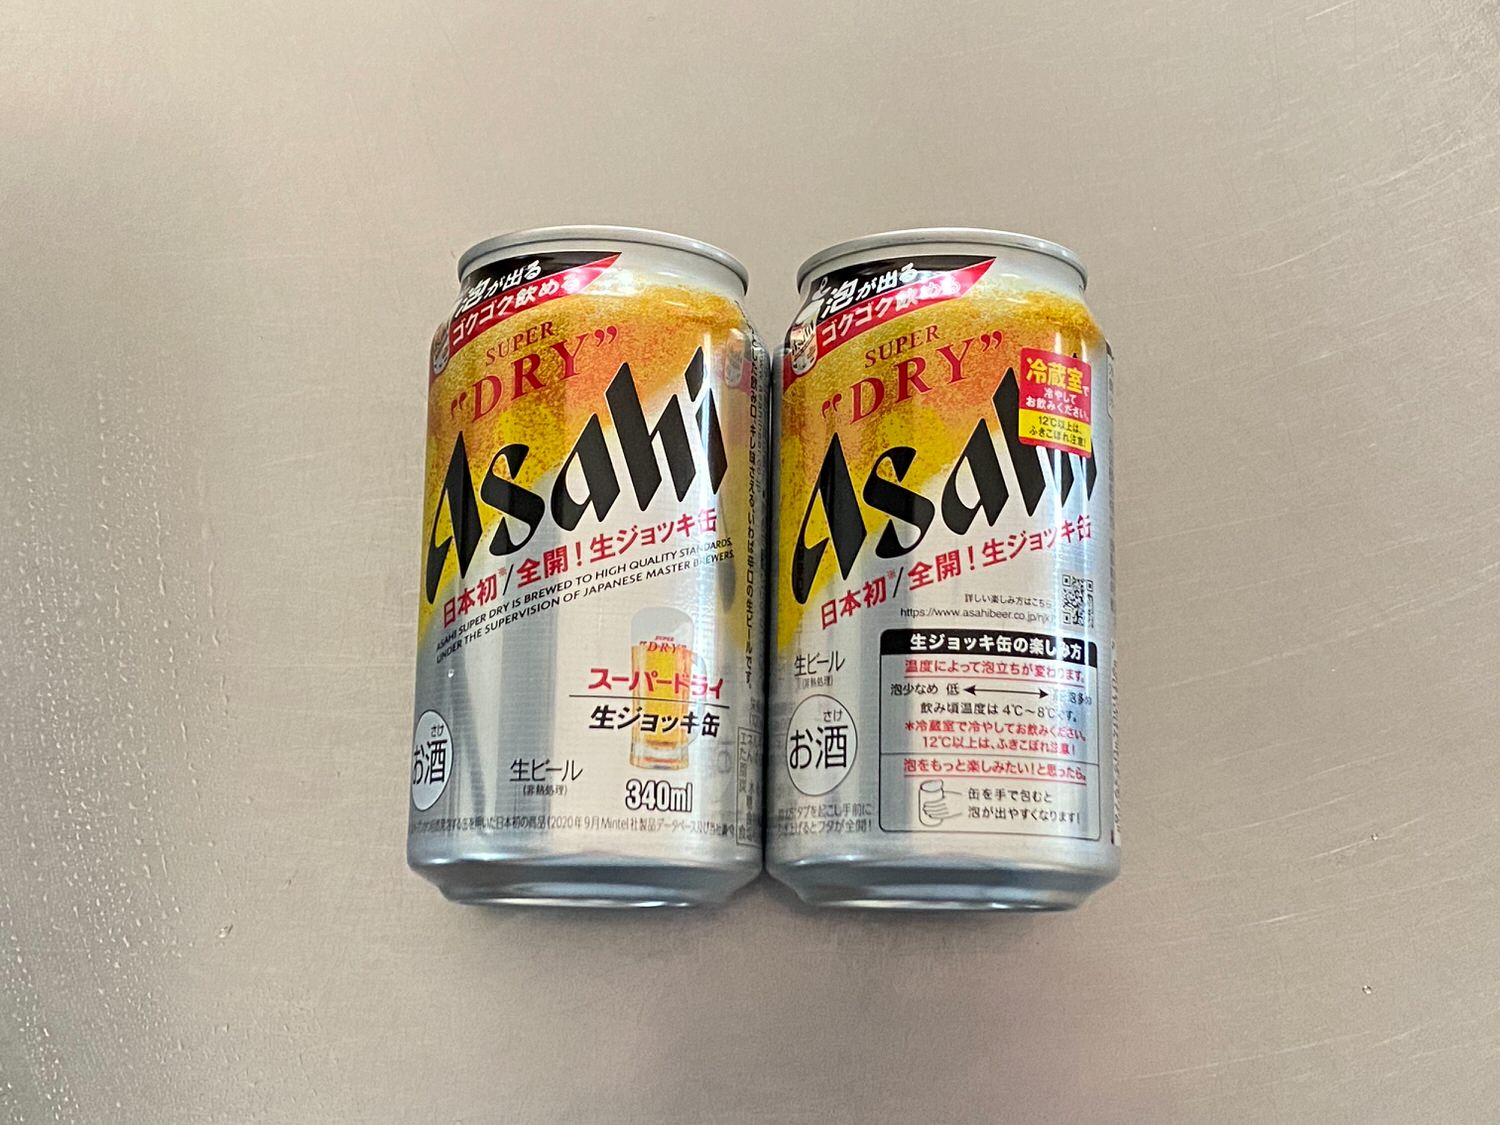 アサヒスーパードライ 生ジョッキ缶 001 202103